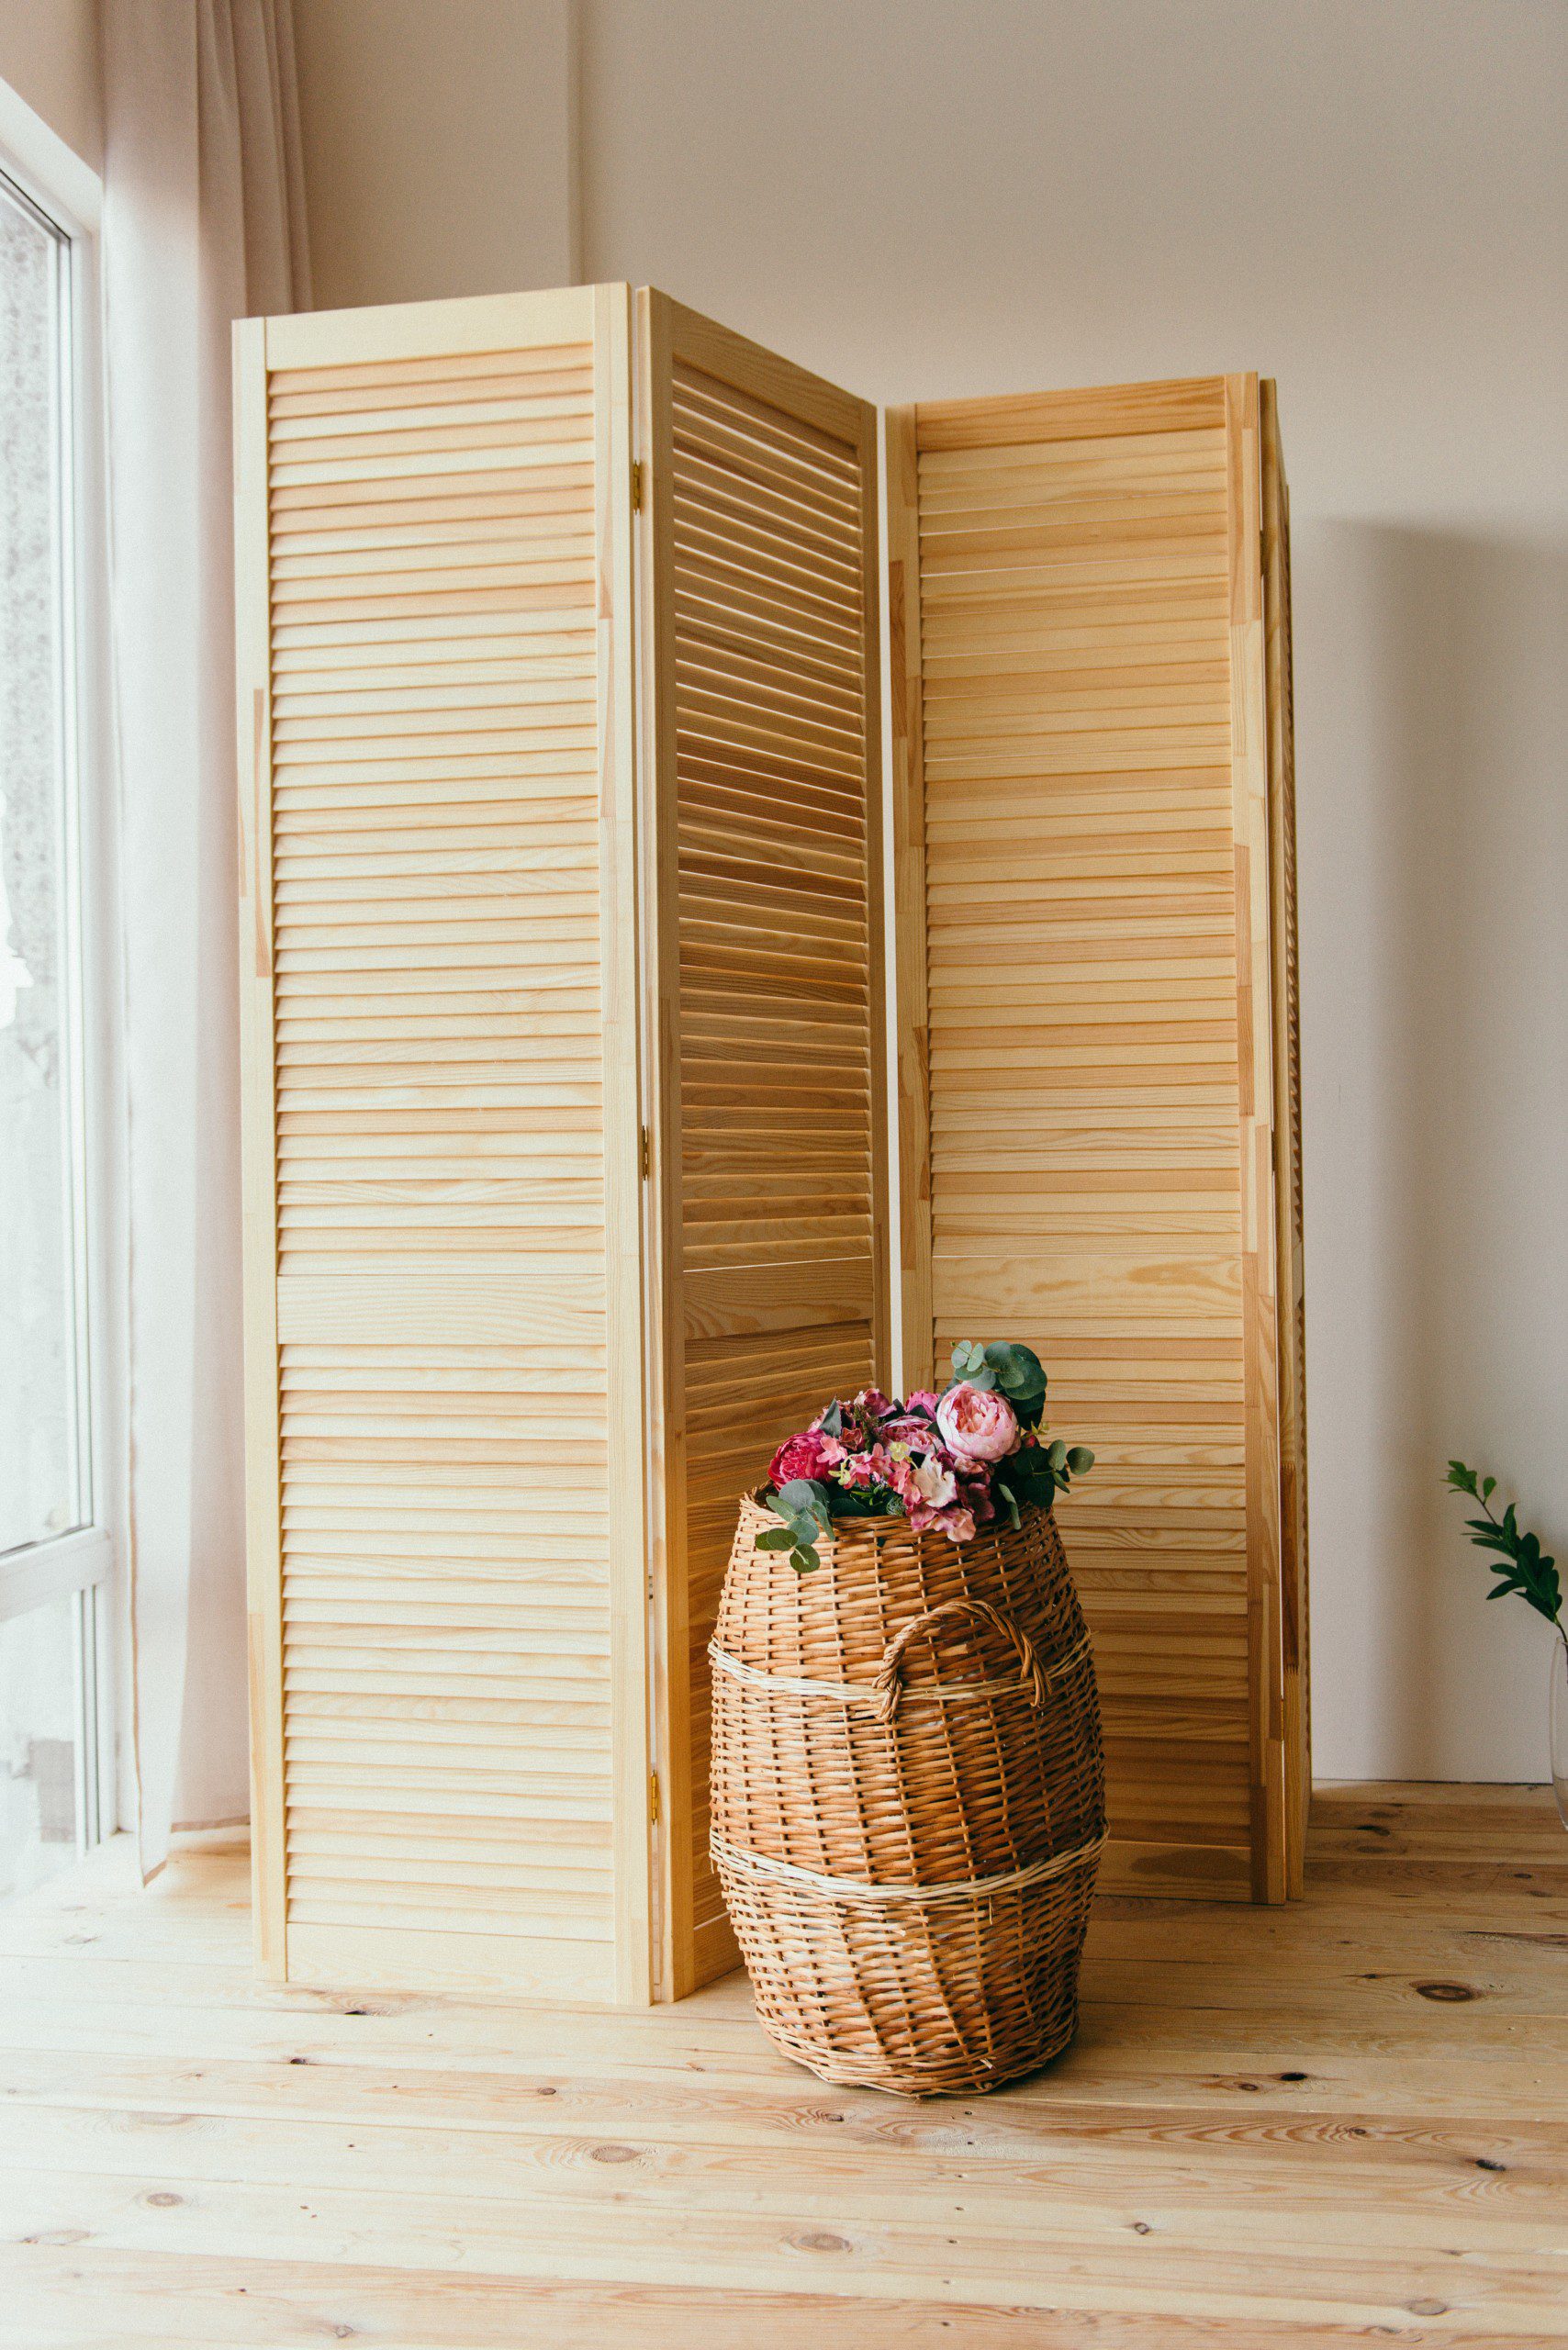 Imagem de um biombo de madeira ao lado de um cesto também de madeira em um ambiente com parede bege. 